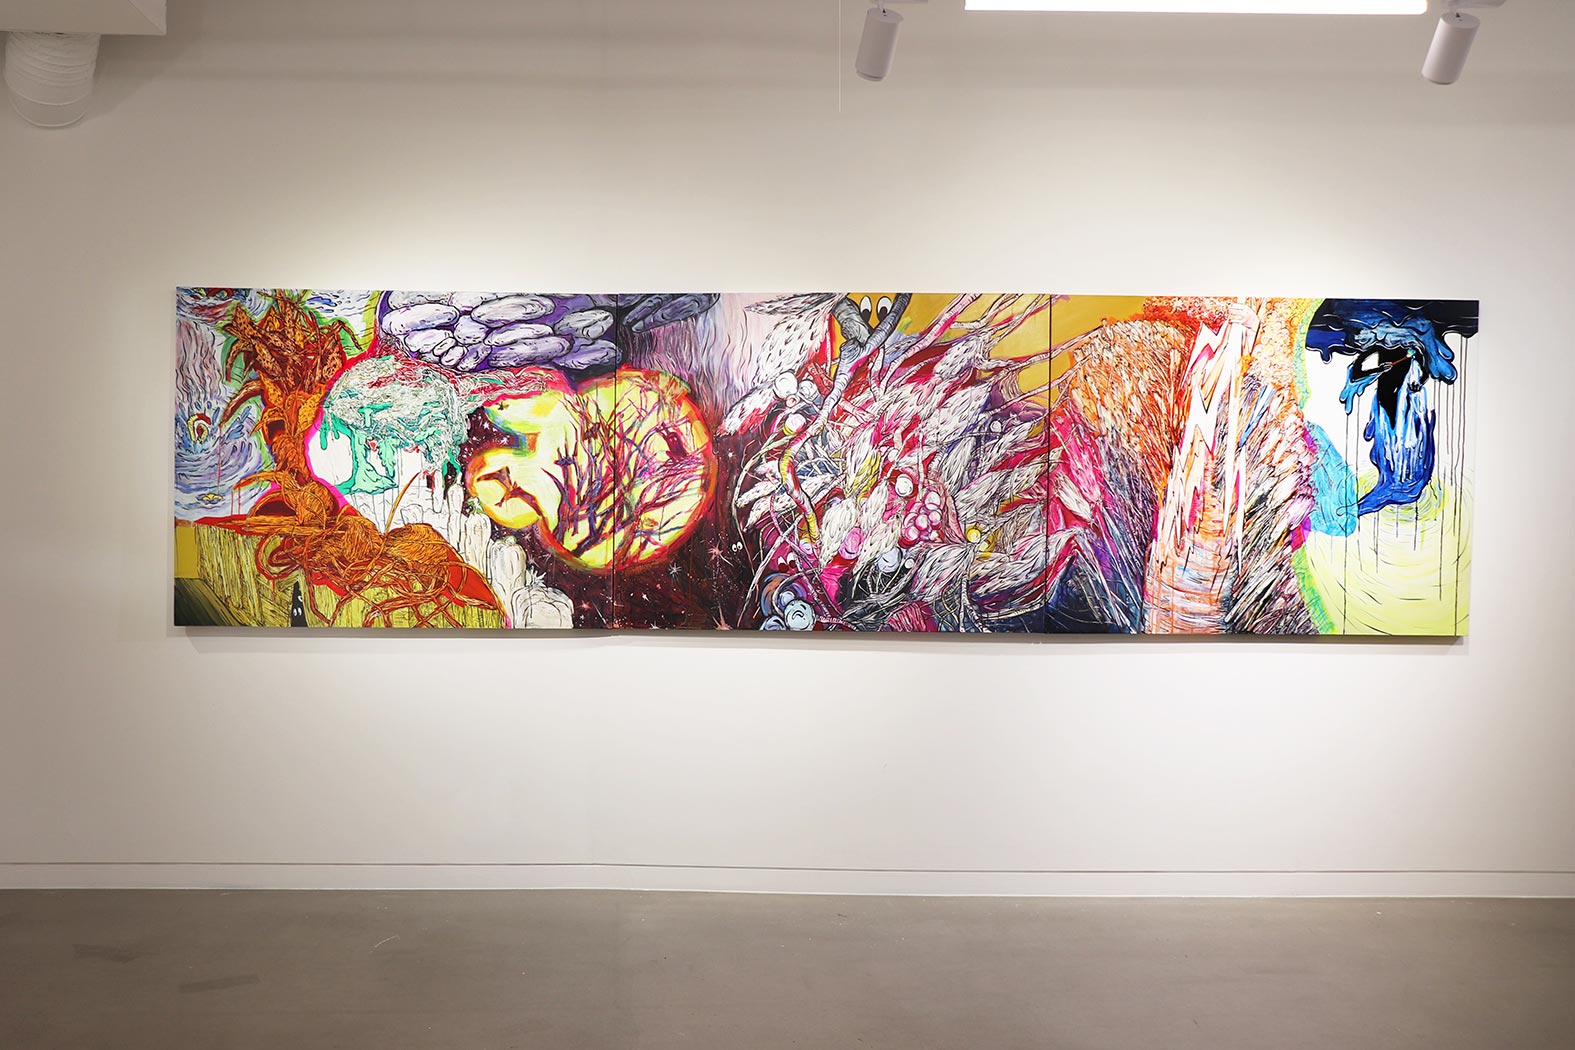 메두사의 노래 시리즈 전경, oil, oil pastel, watercolor on canvas. 145.5x112.1cm. 2020